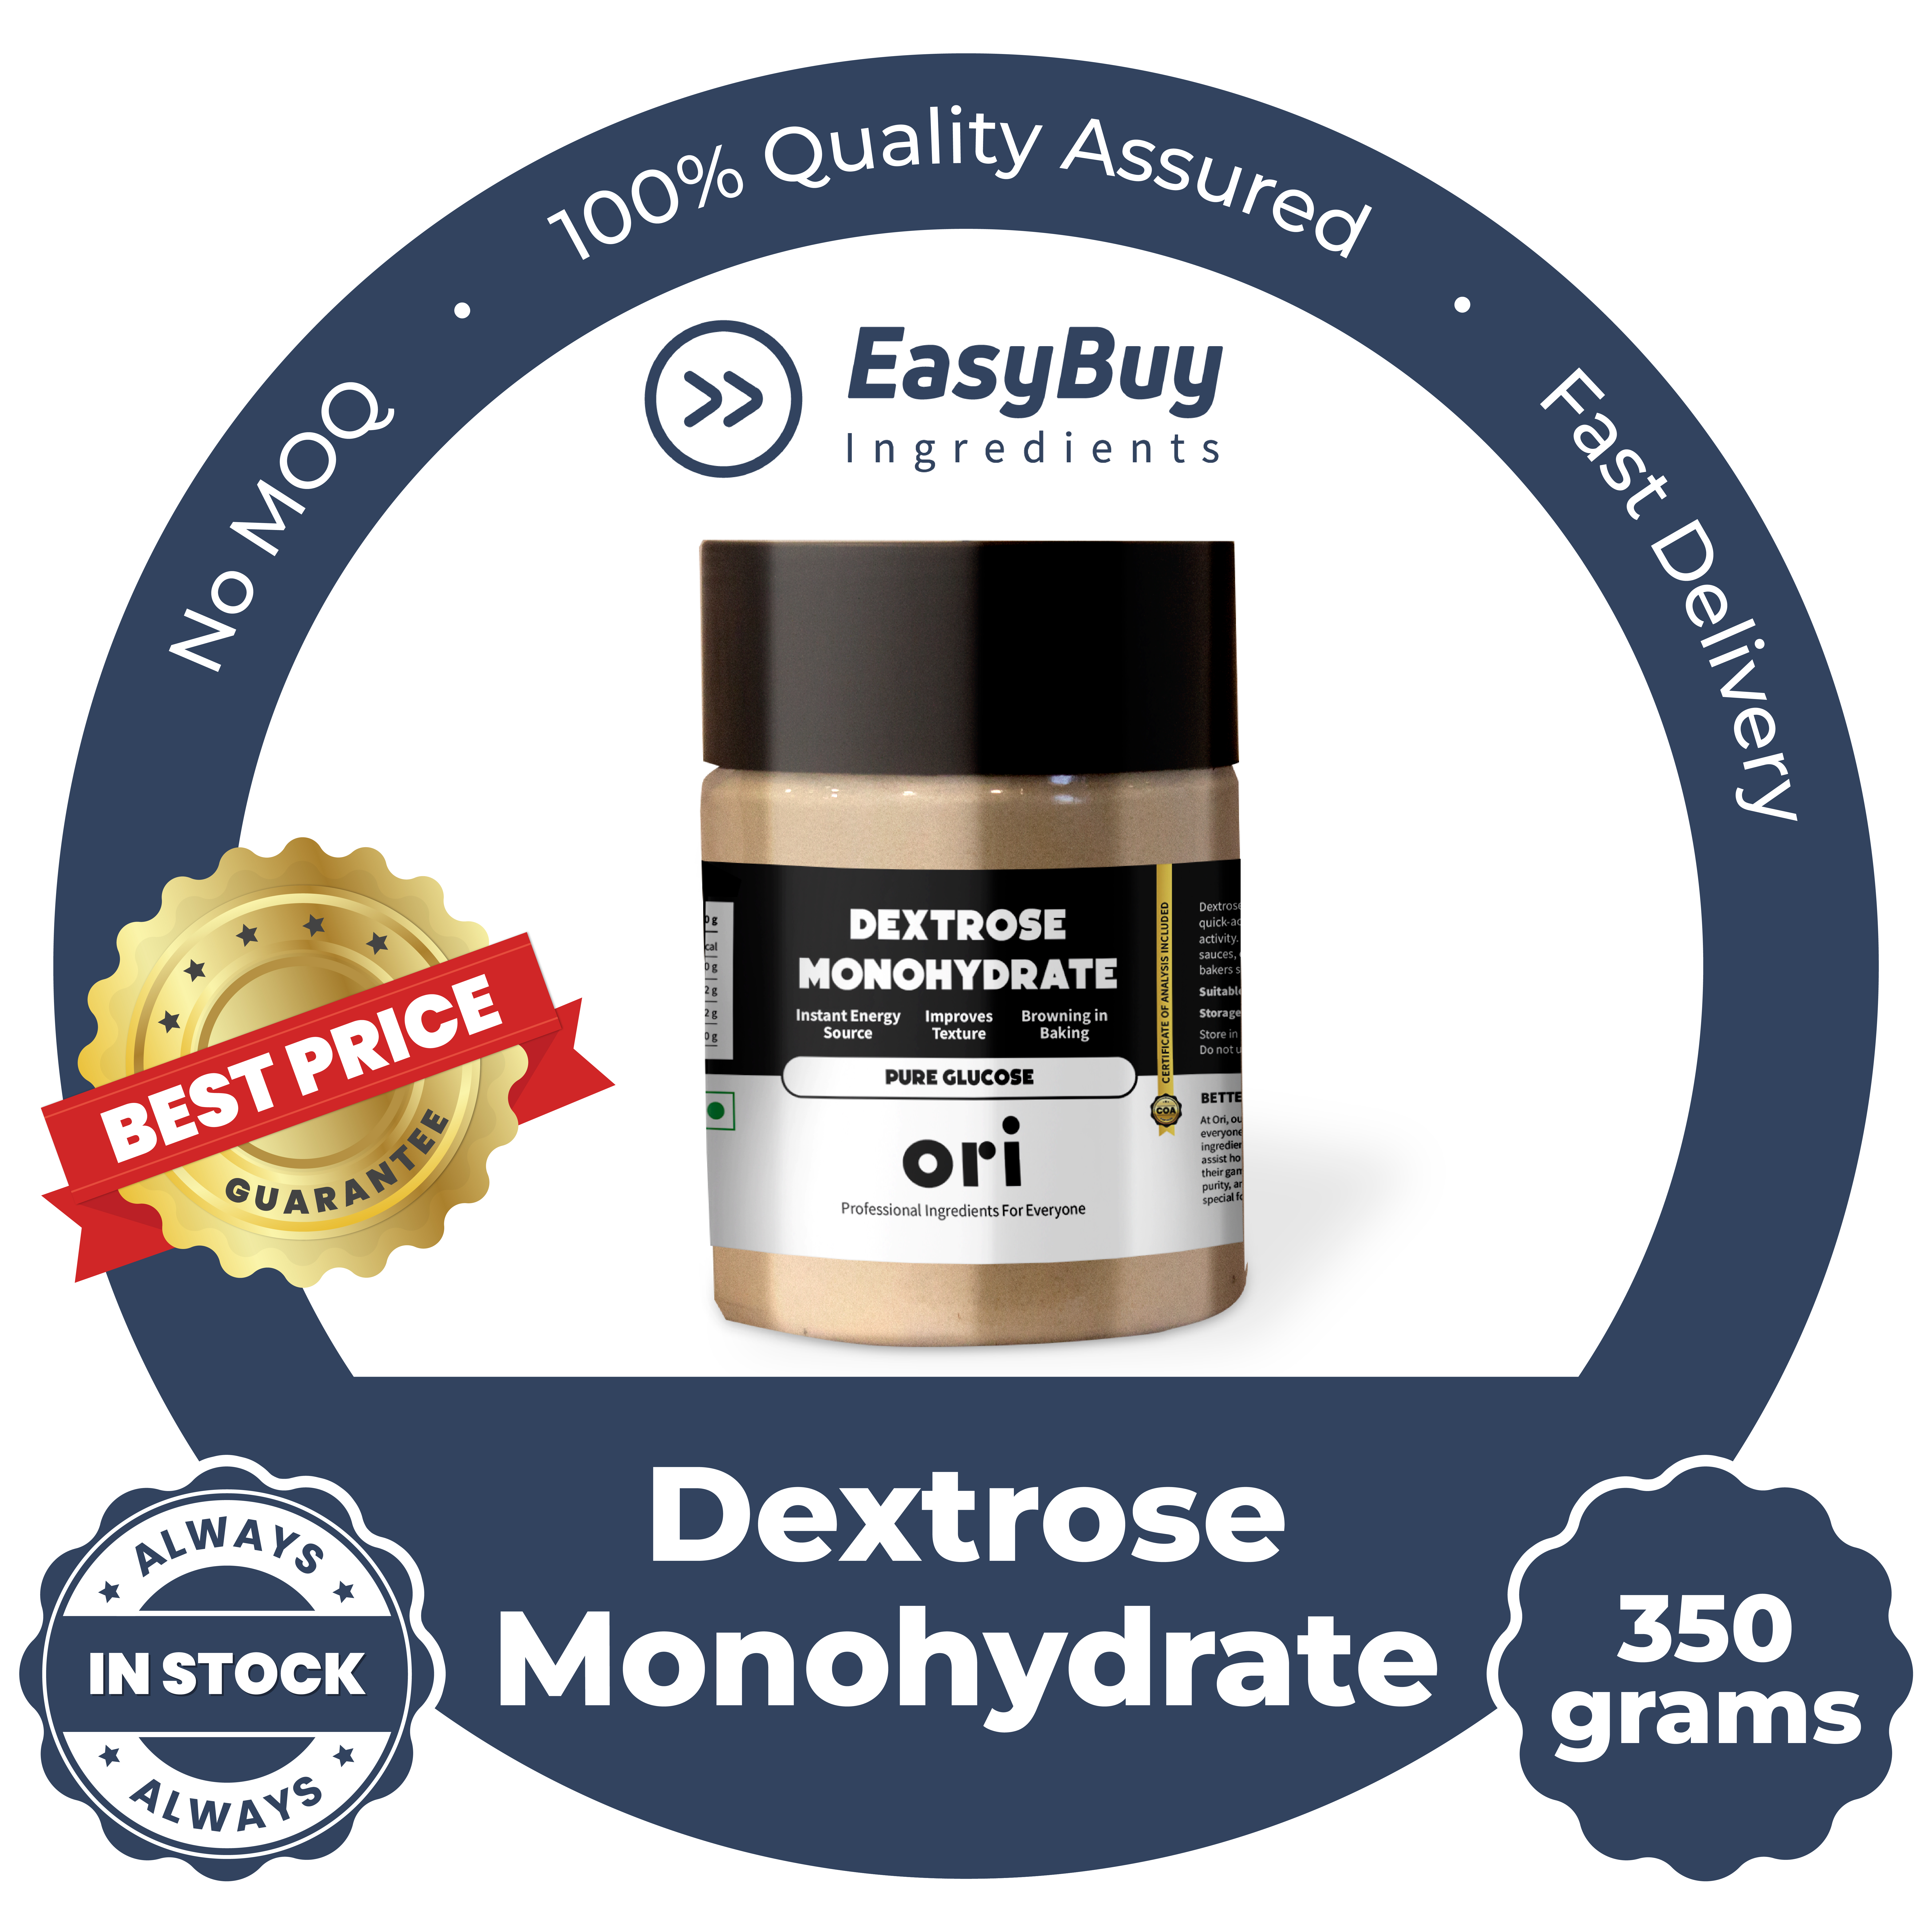 Dextrose Monohydrate - Pure Glucose